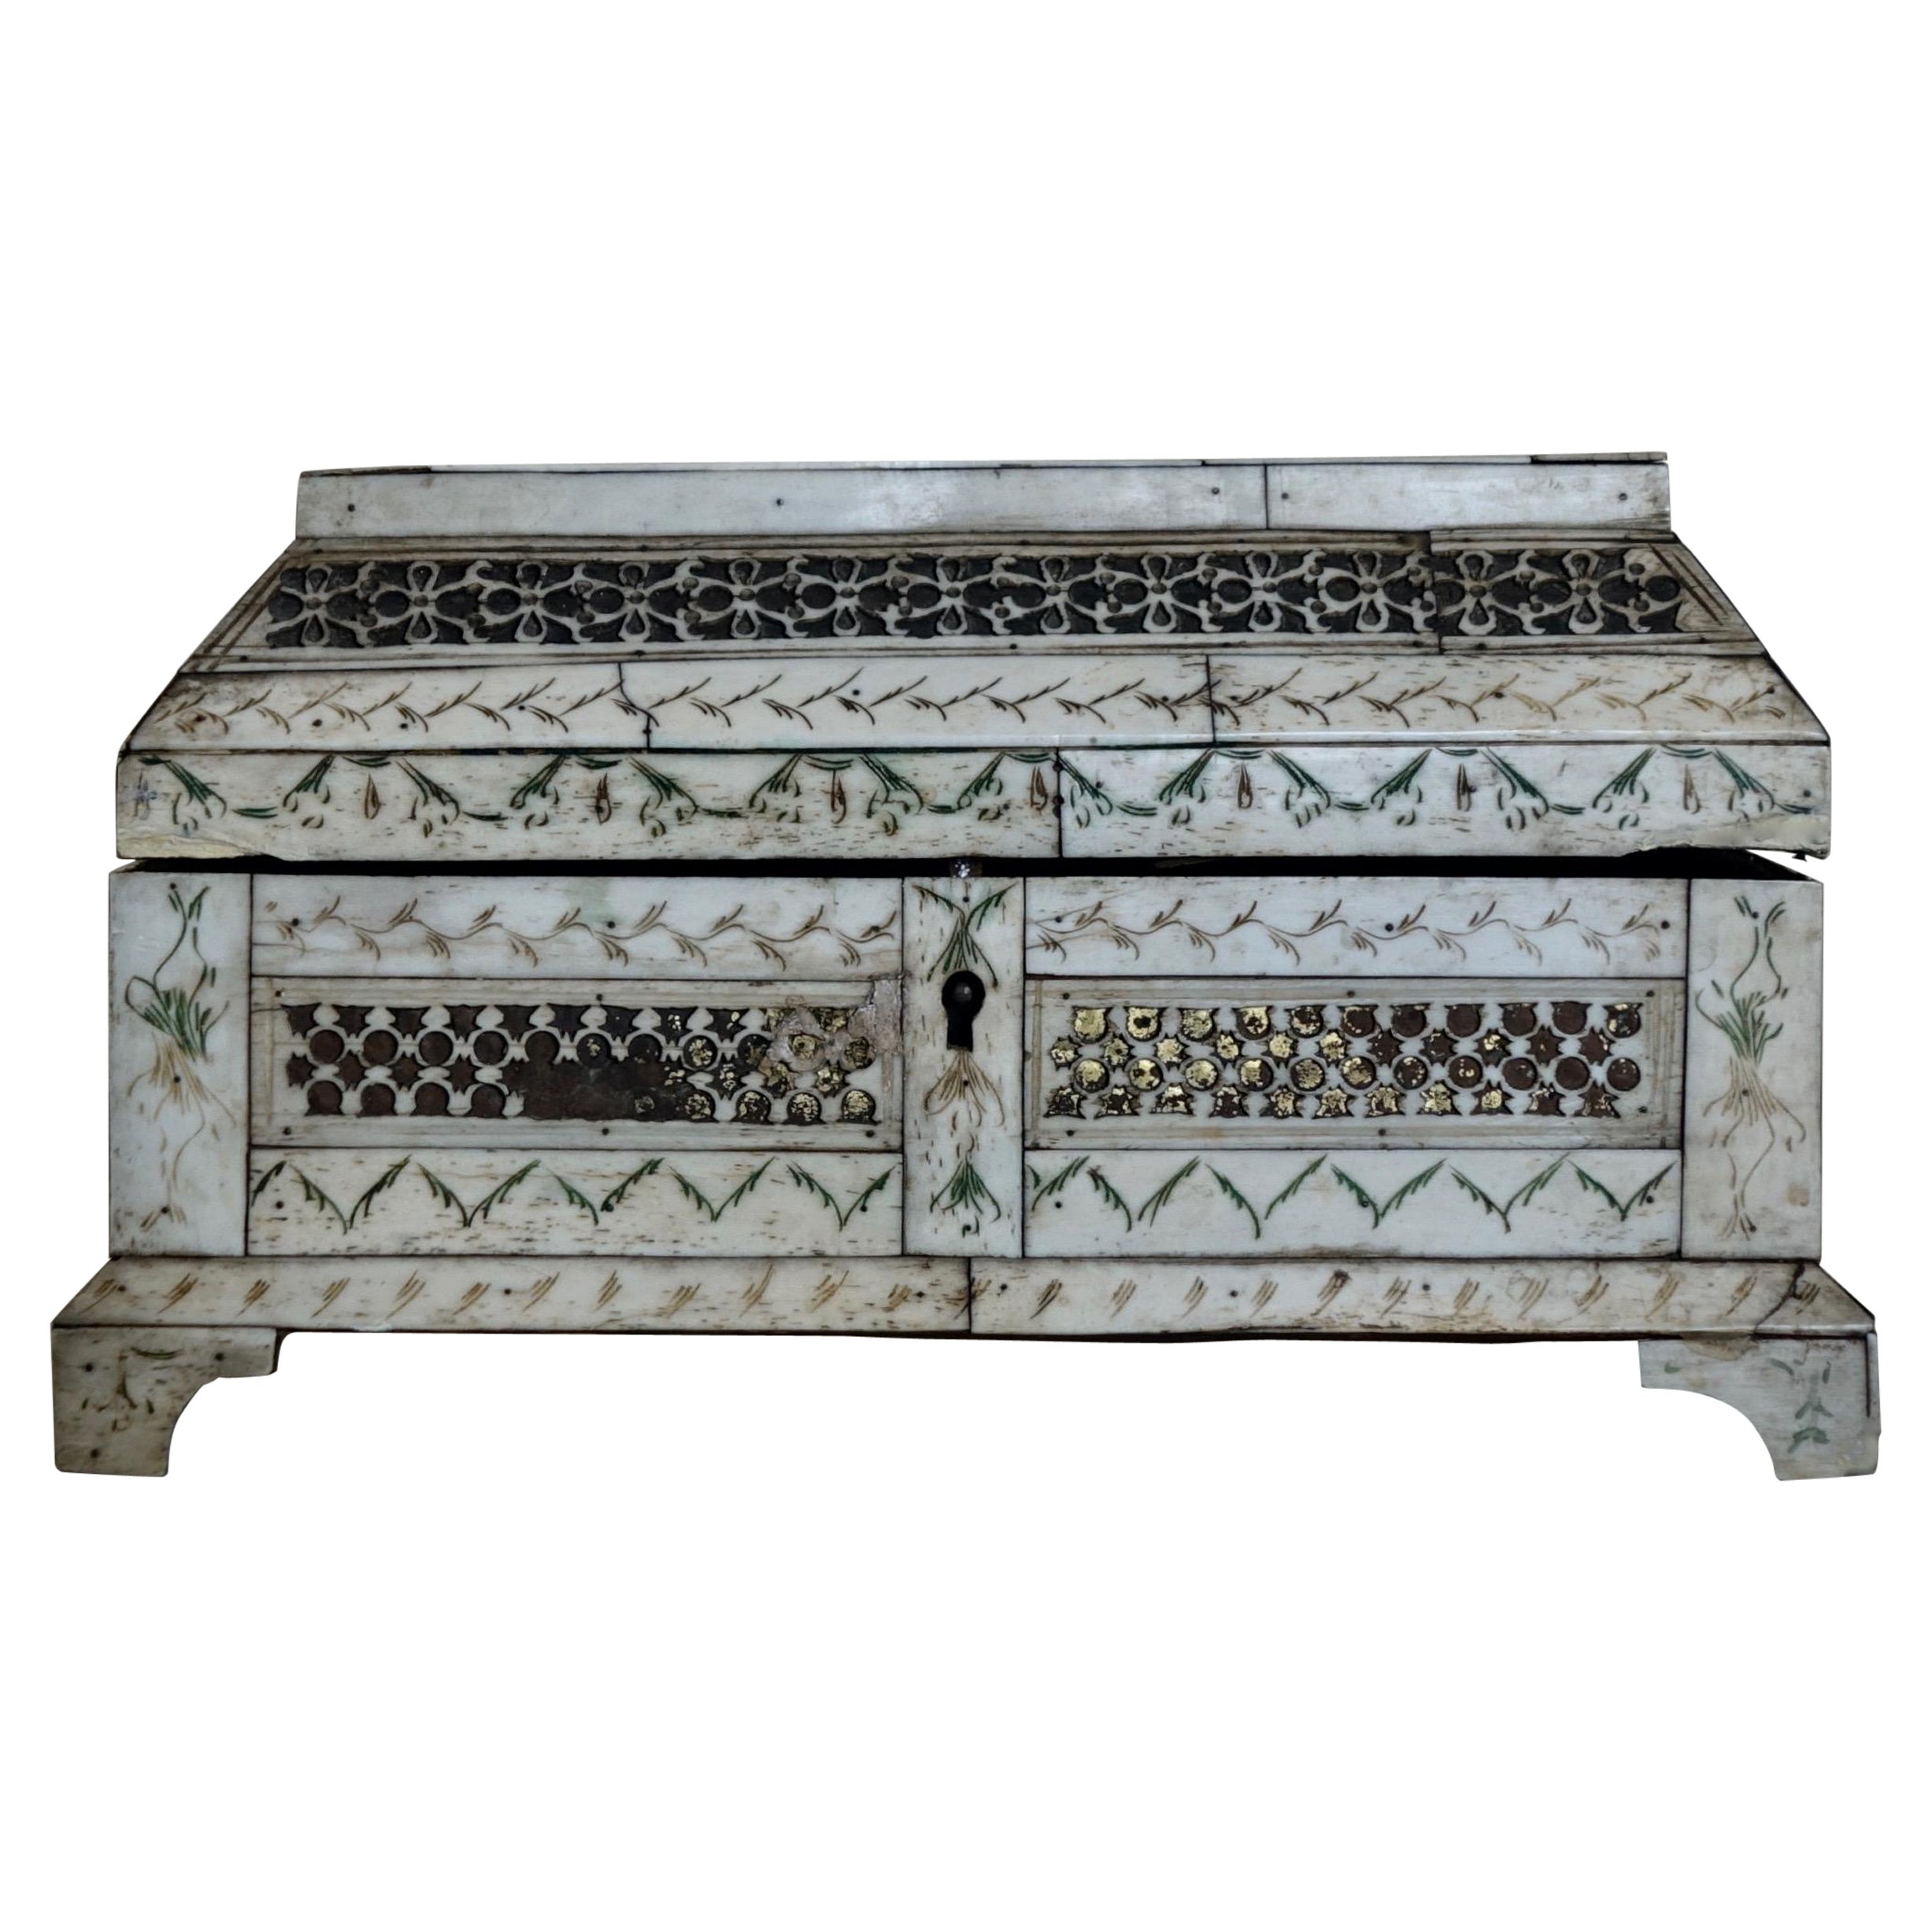 Russische Tischdose aus geschnitztem Knochen - 18. Jahrhundert